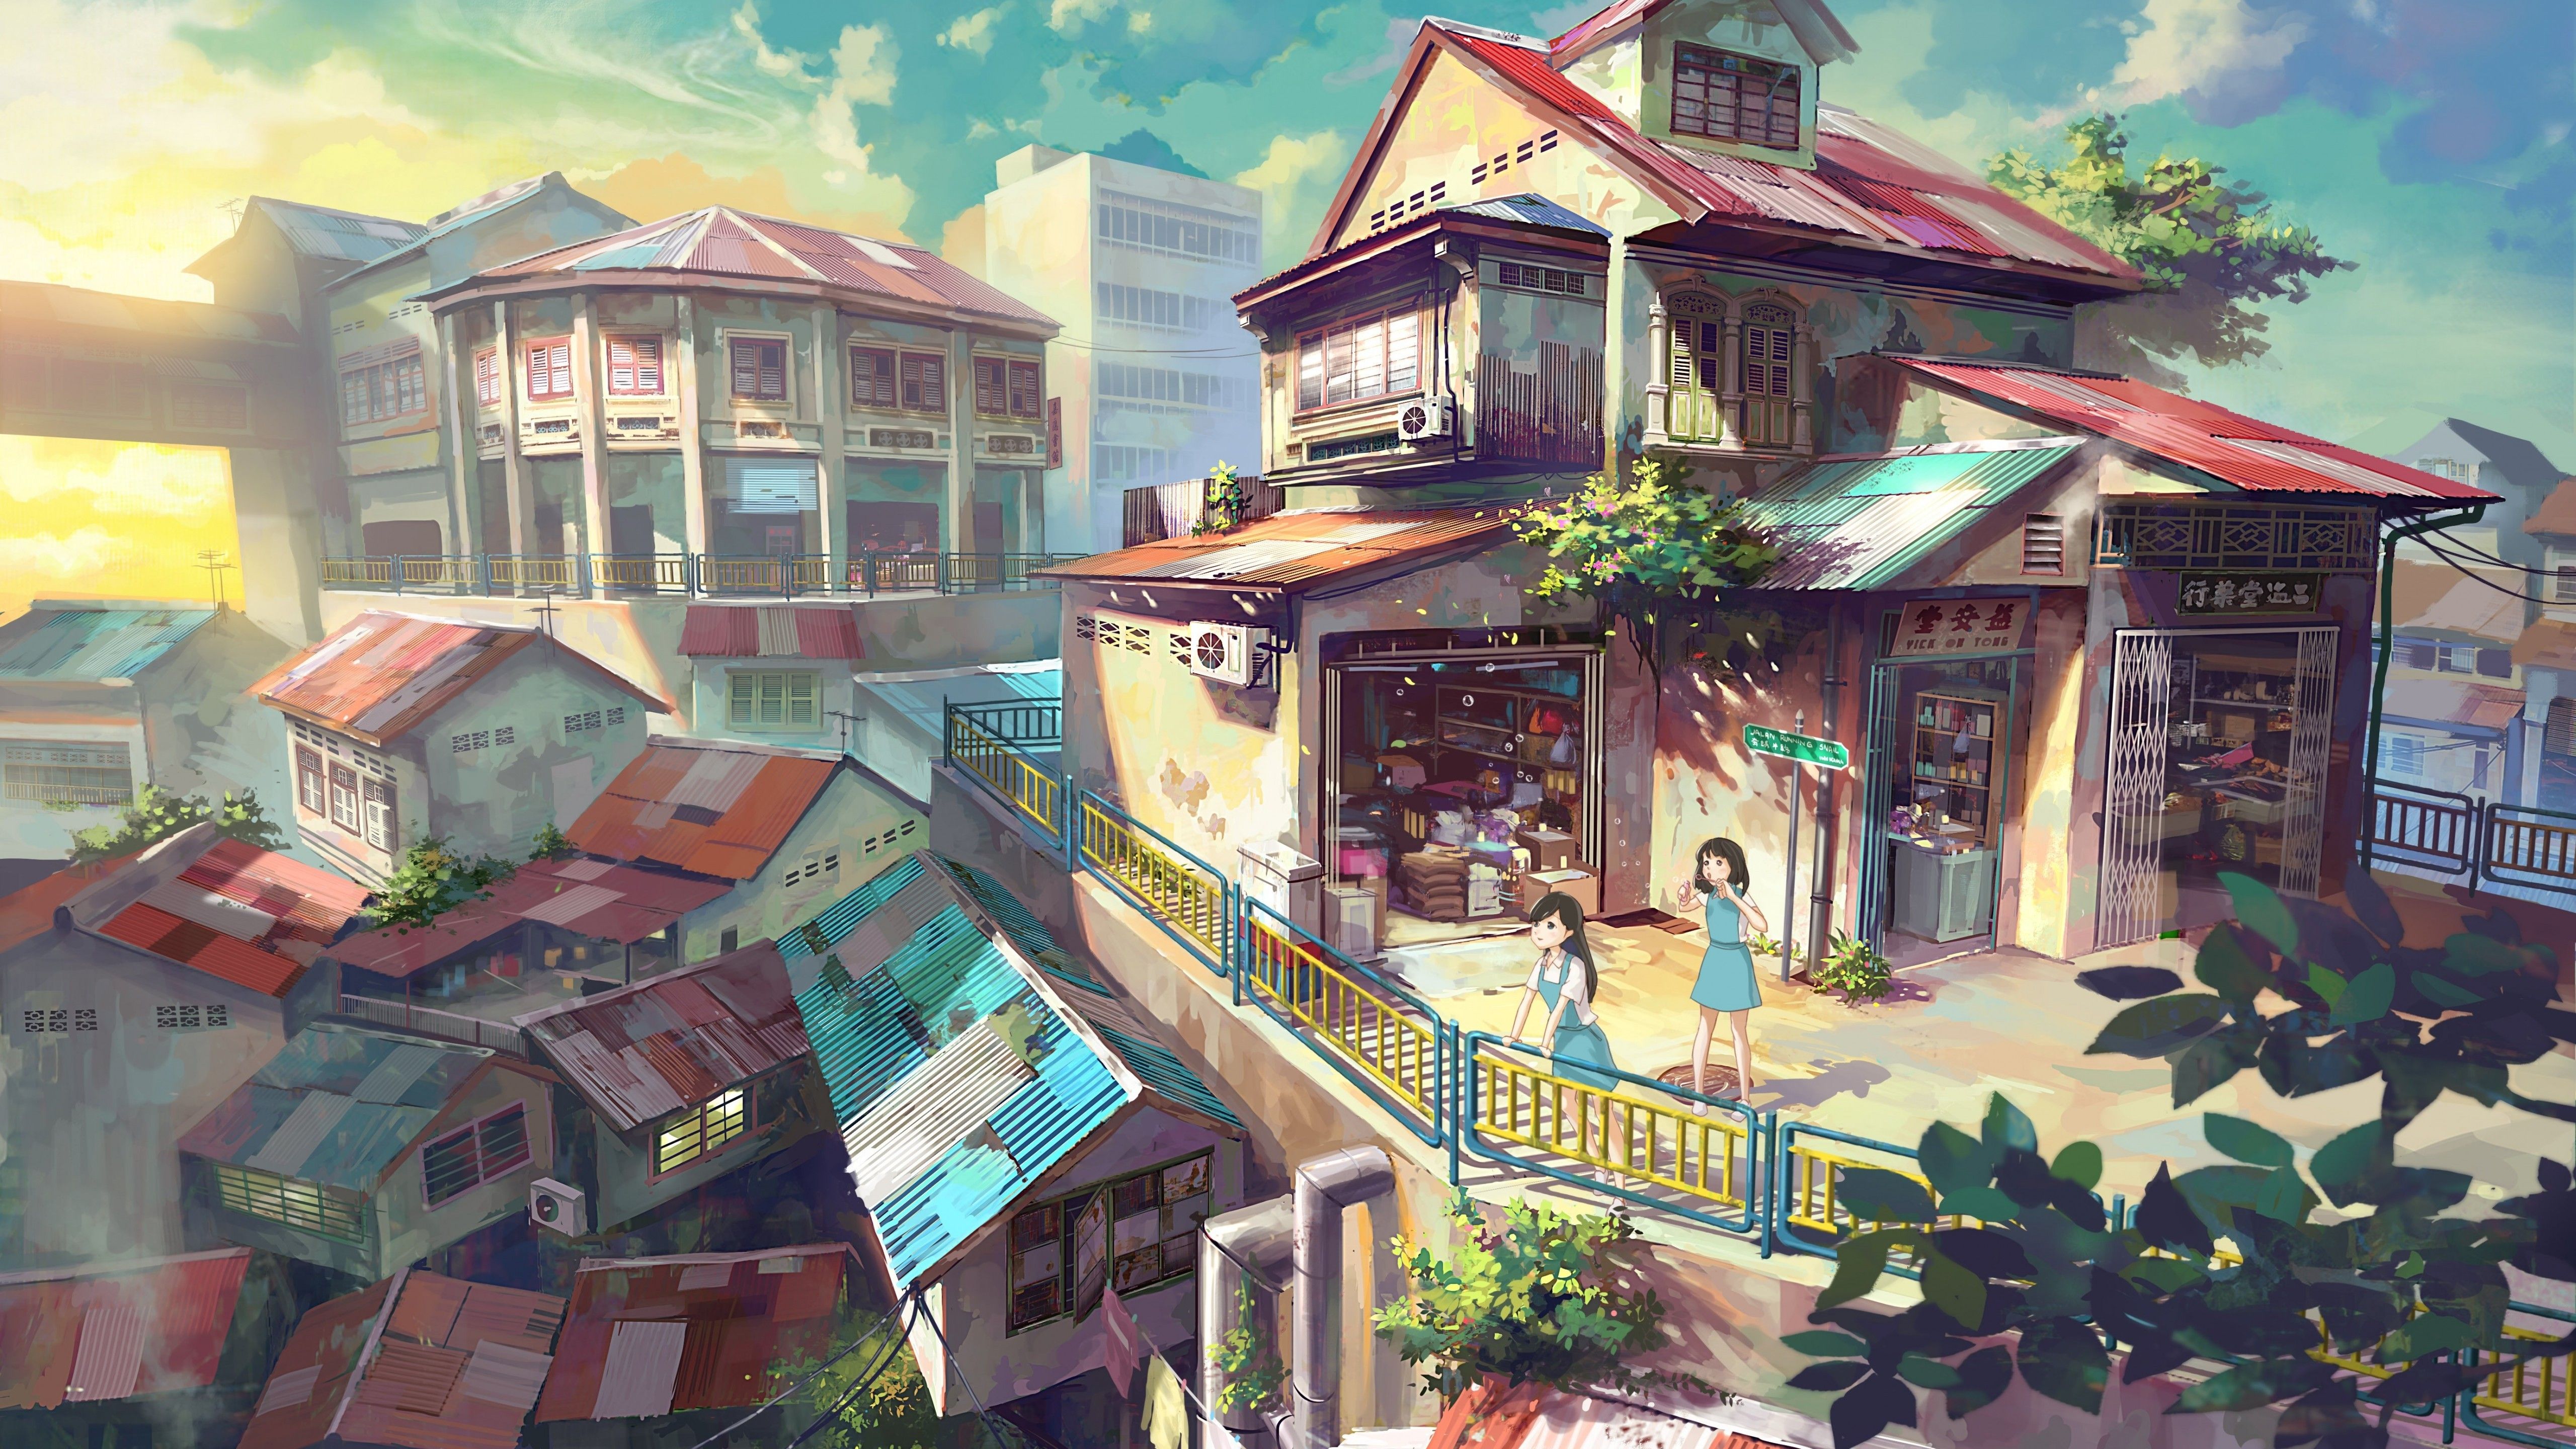 Anime Buildings, Summer, Girls, Clouds, Artwork, Sunset, Anime Wallpaper For Desktop